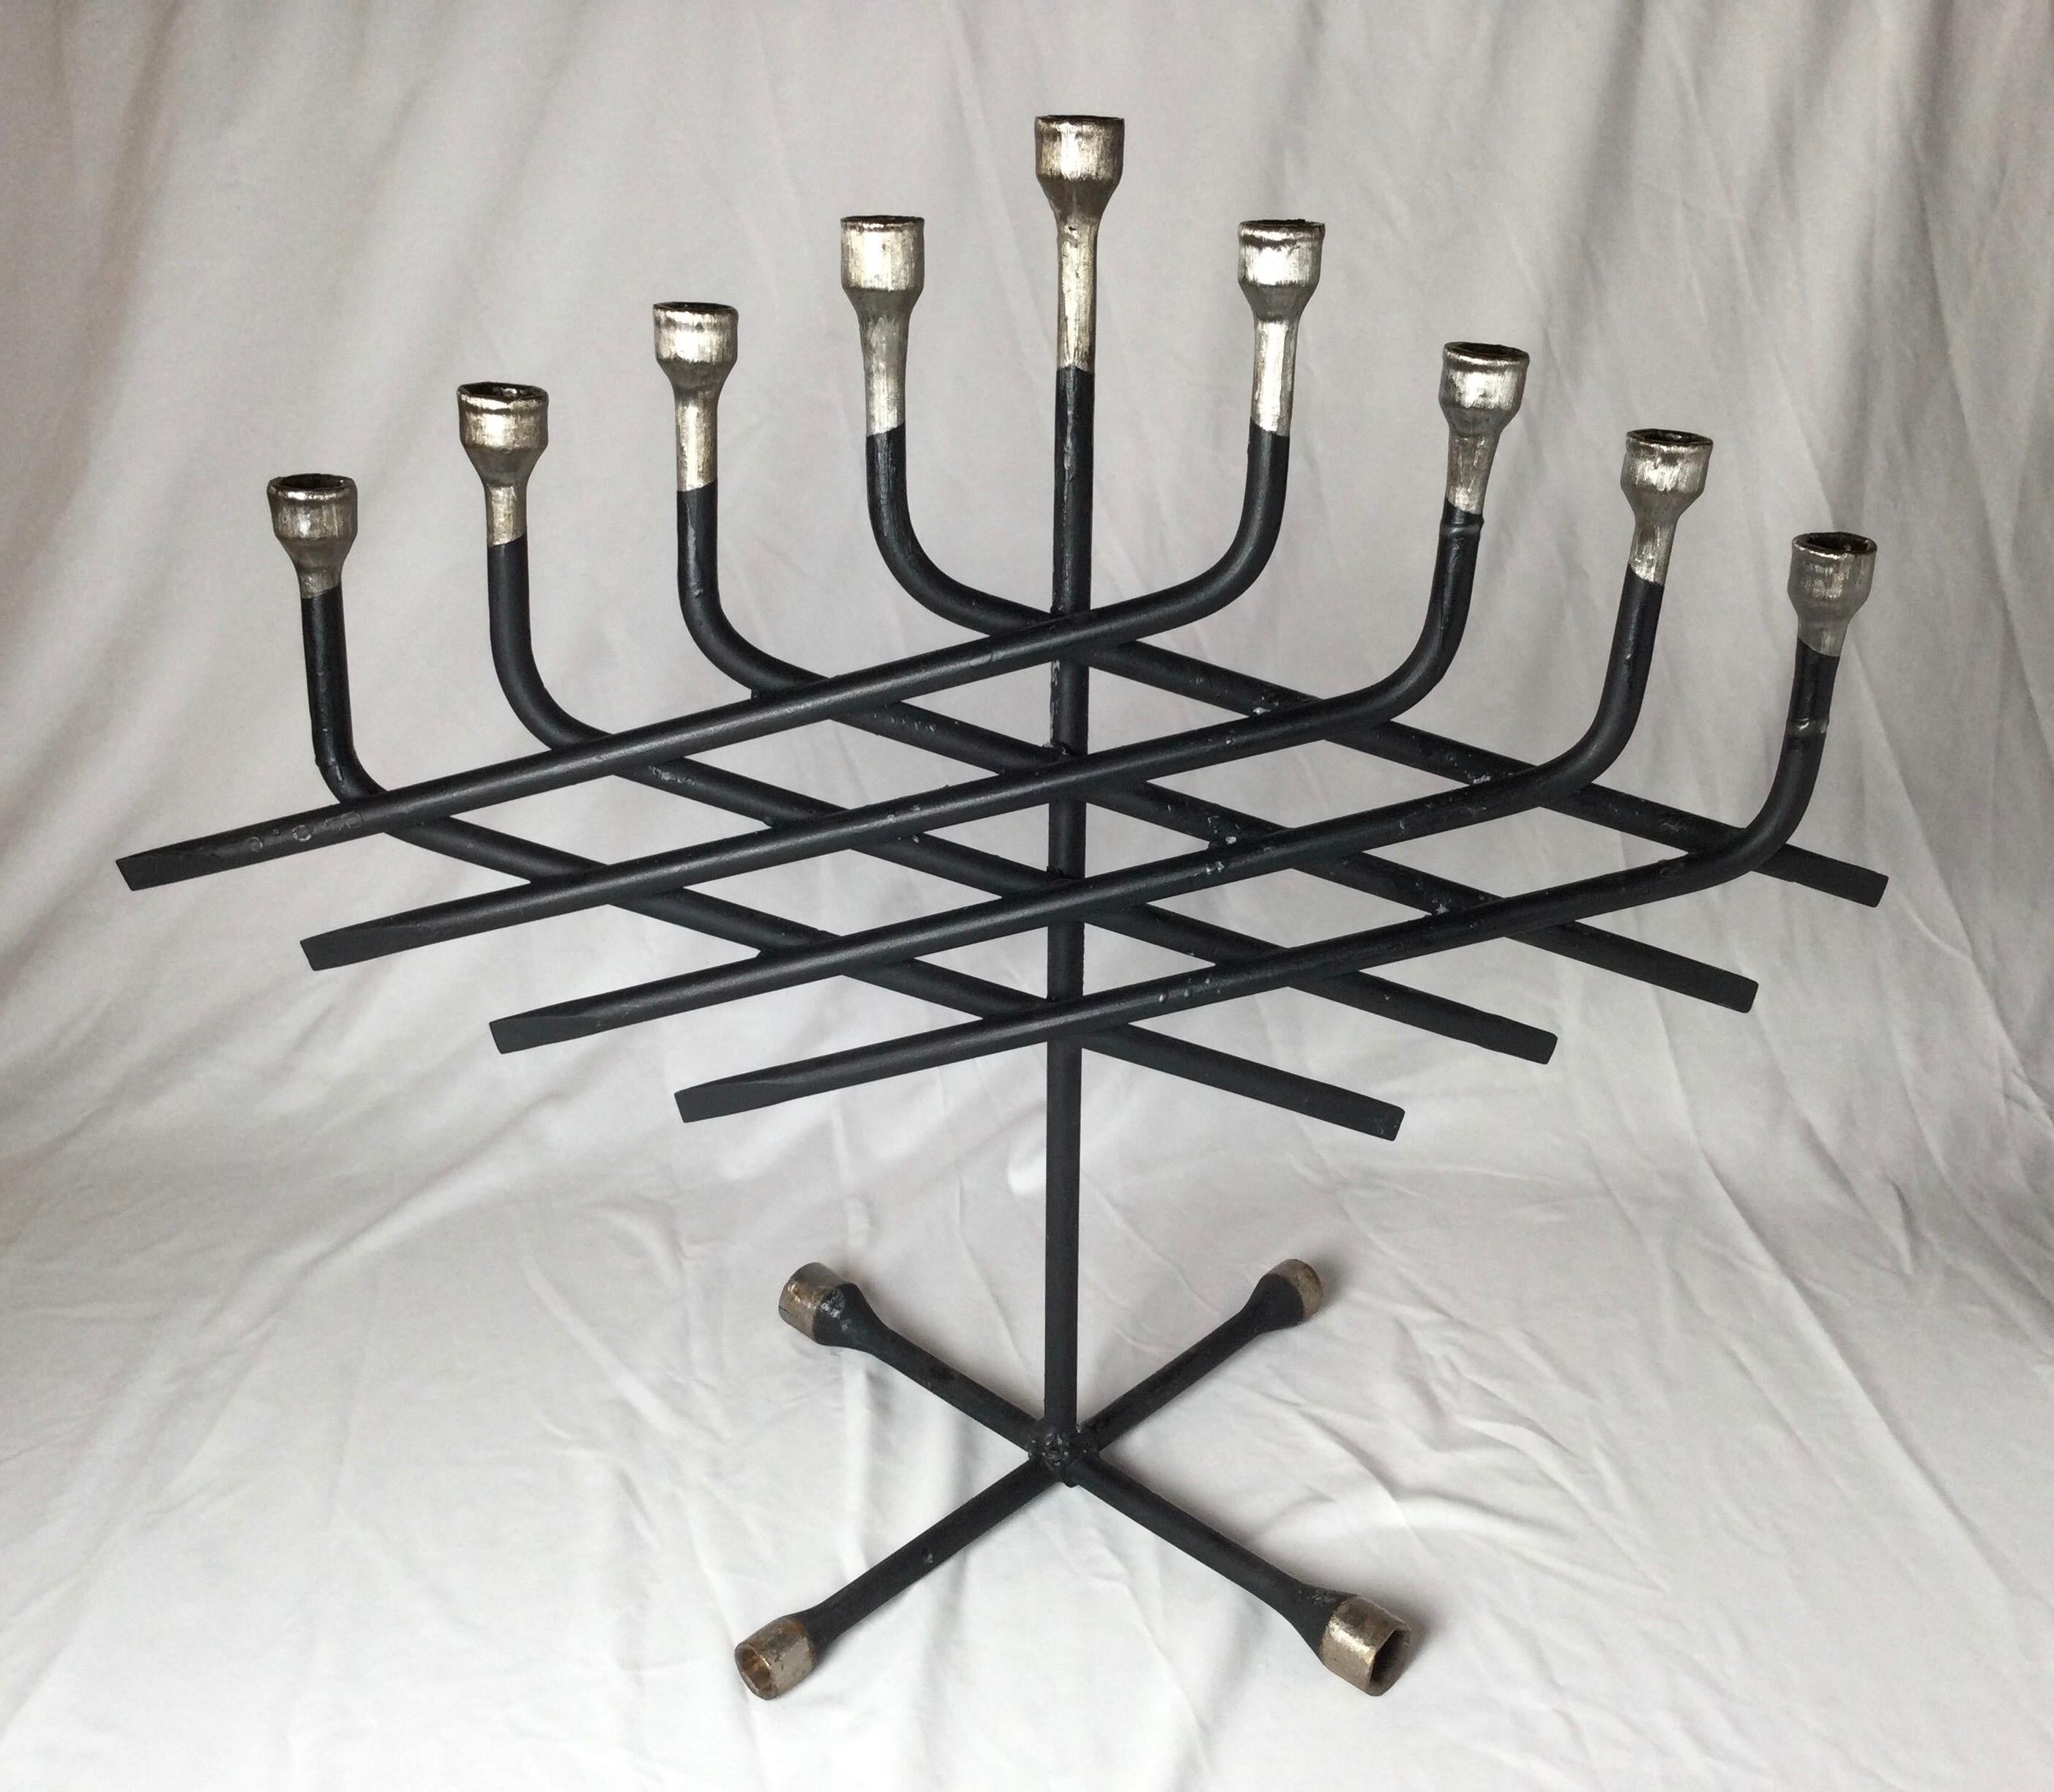 Handgefertigte wiederverwendete Folk Art Judaica Menorah. Künstler paraphiert. Handgefertigte Präzisionsarbeit mit eisernen Radmutternschlüsseln.